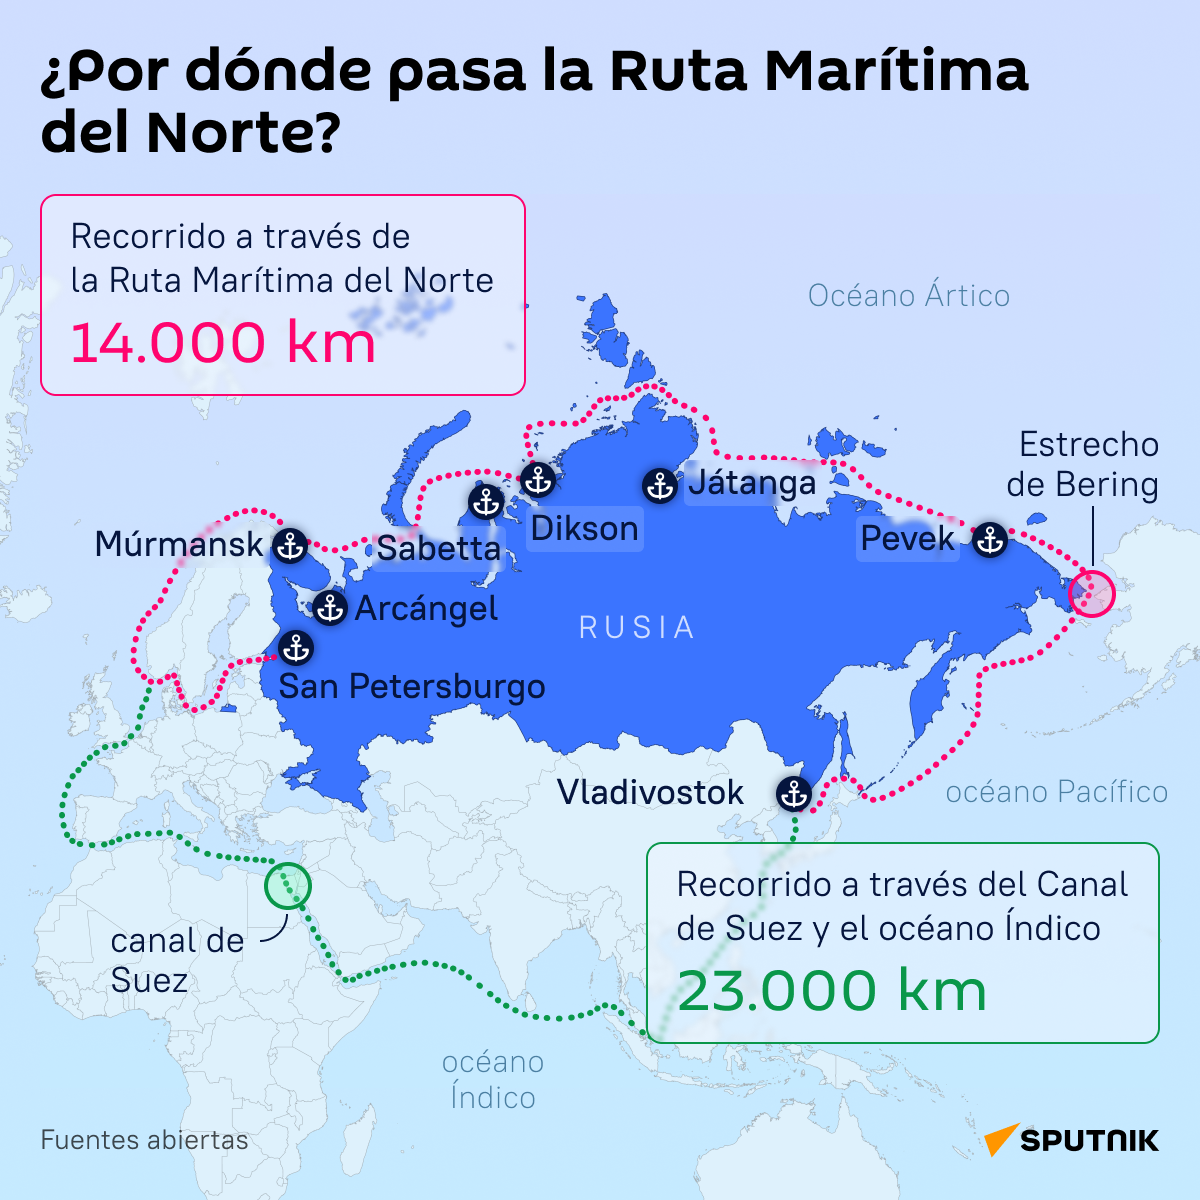 El recorrido de la Ruta Marítima del Norte comparado con la vía del canal de Suez - Sputnik Mundo